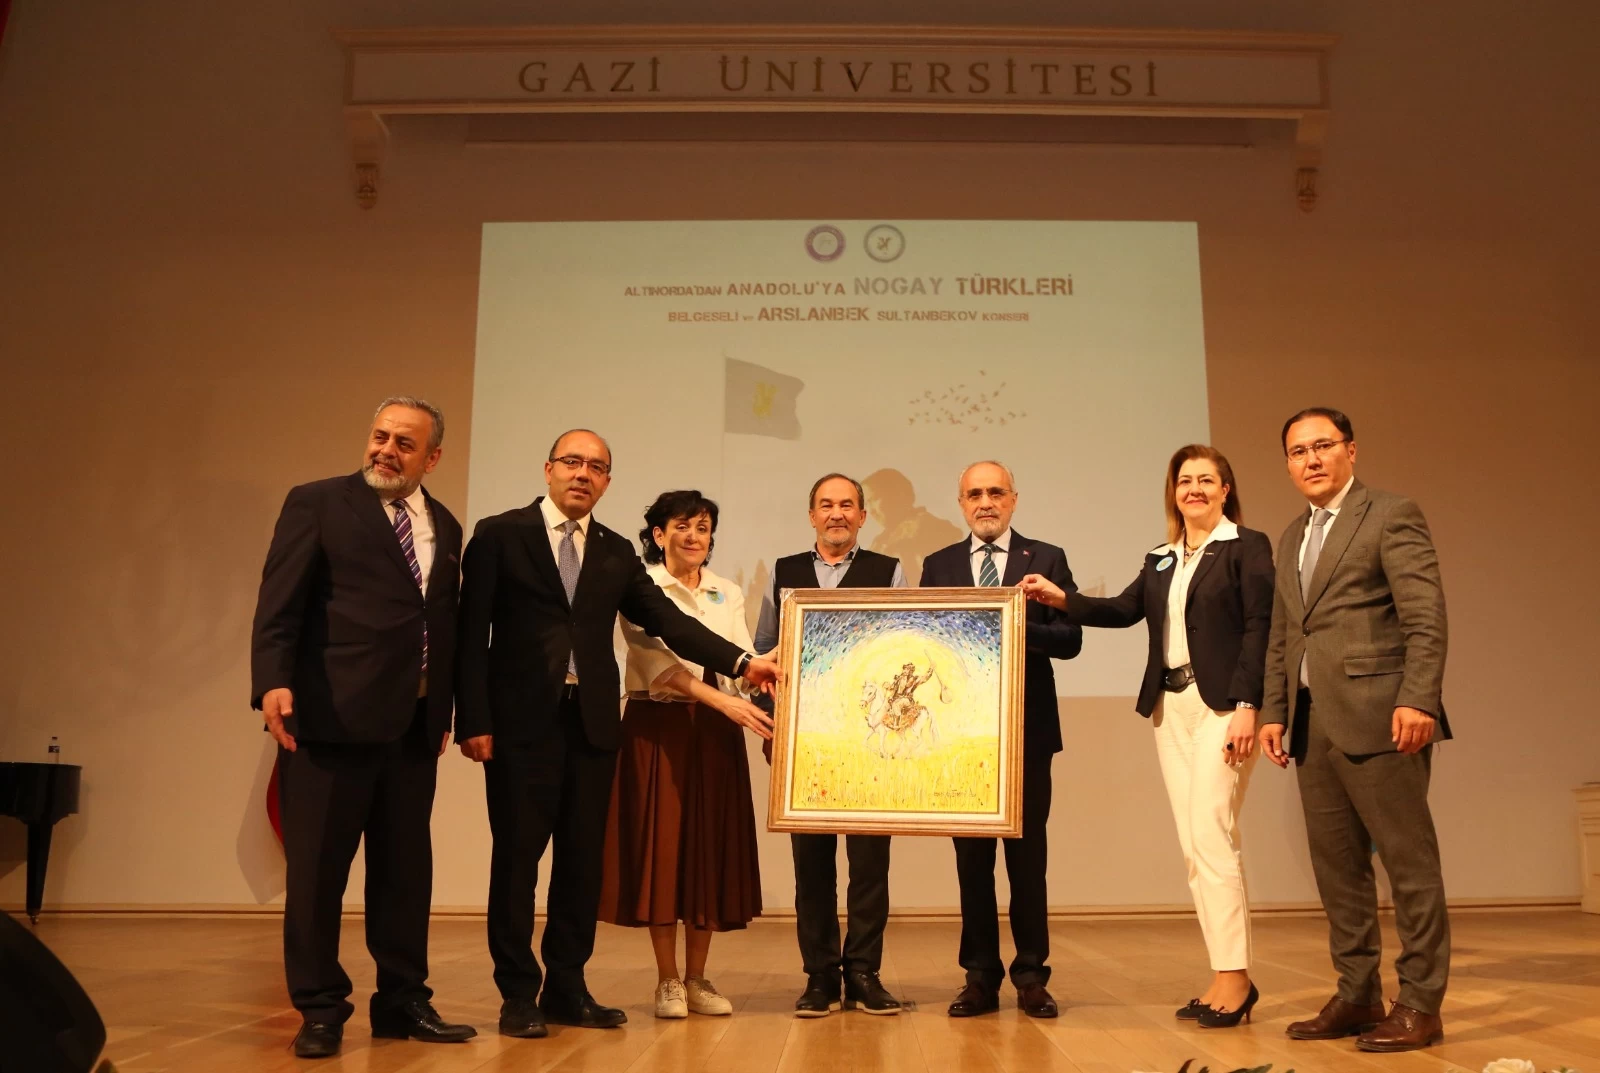 Gazi Üniversitesi'nden Altınorda'dan Anadolu'ya Nogay Türkleri Belgeseli ve Arslanbek Sultanbekov Konseri - Resim : 2